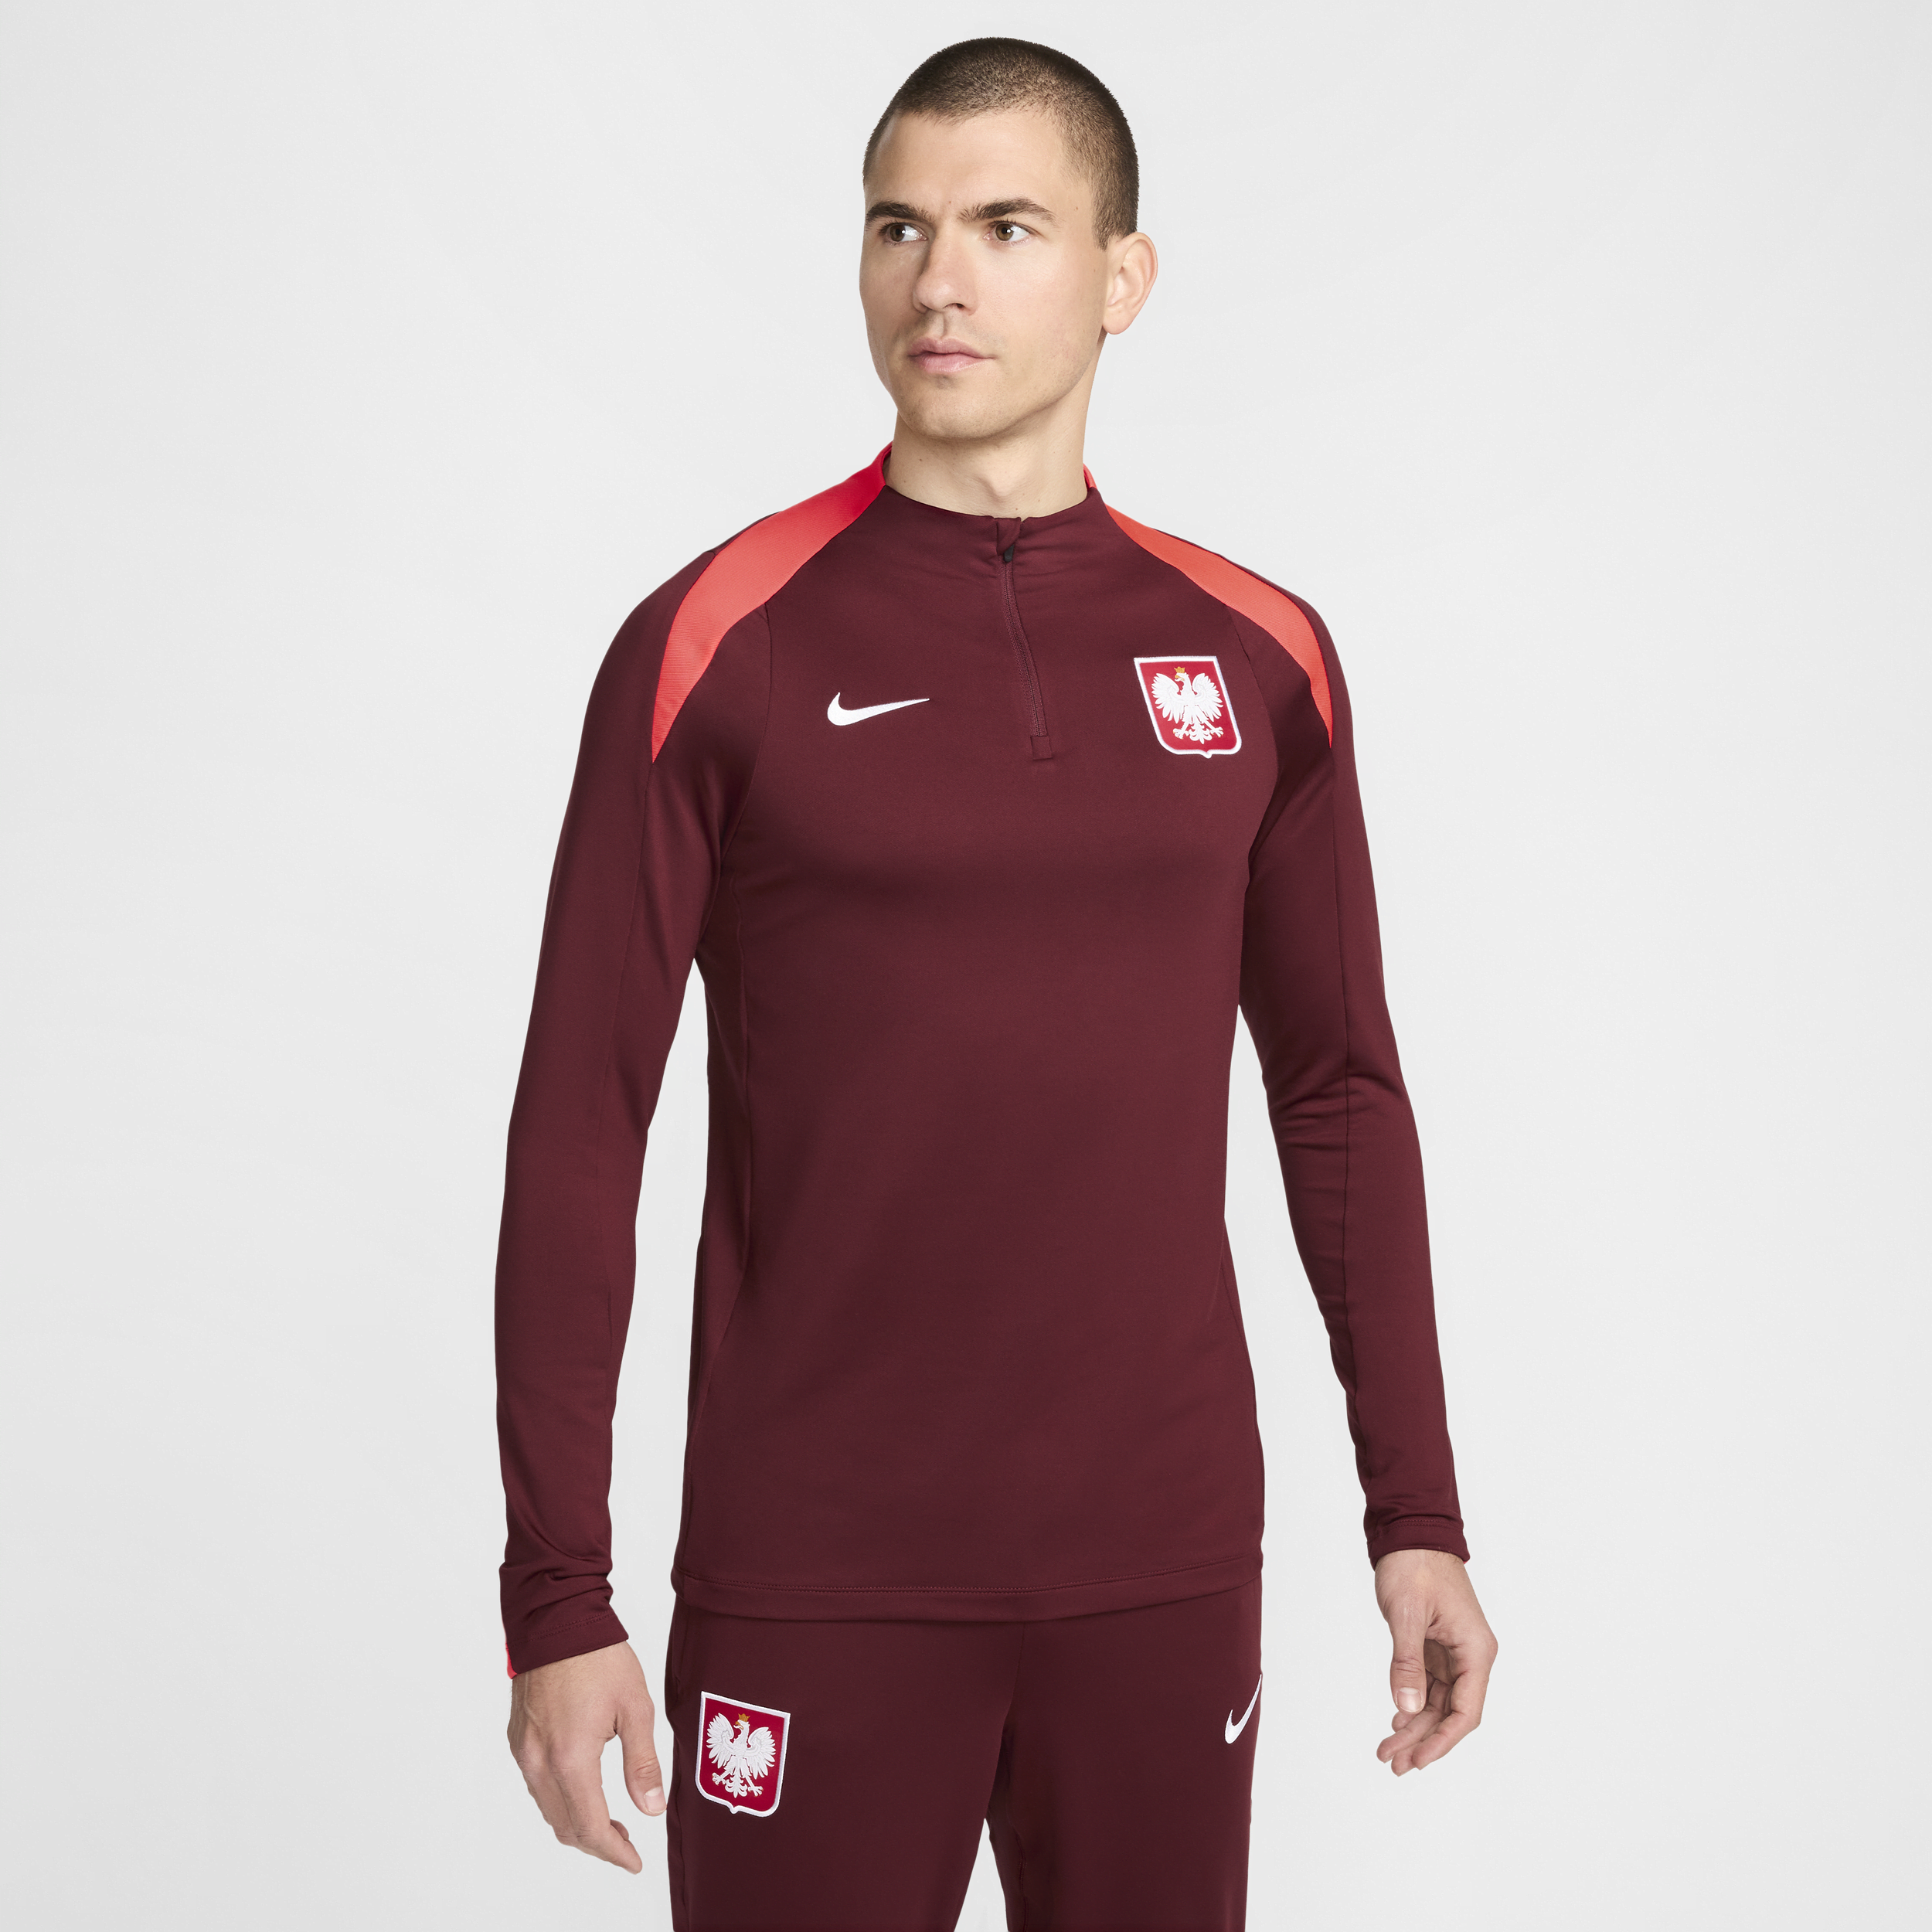 Maglia da calcio per allenamento Nike Dri-FIT Polonia Strike – Uomo - Rosso